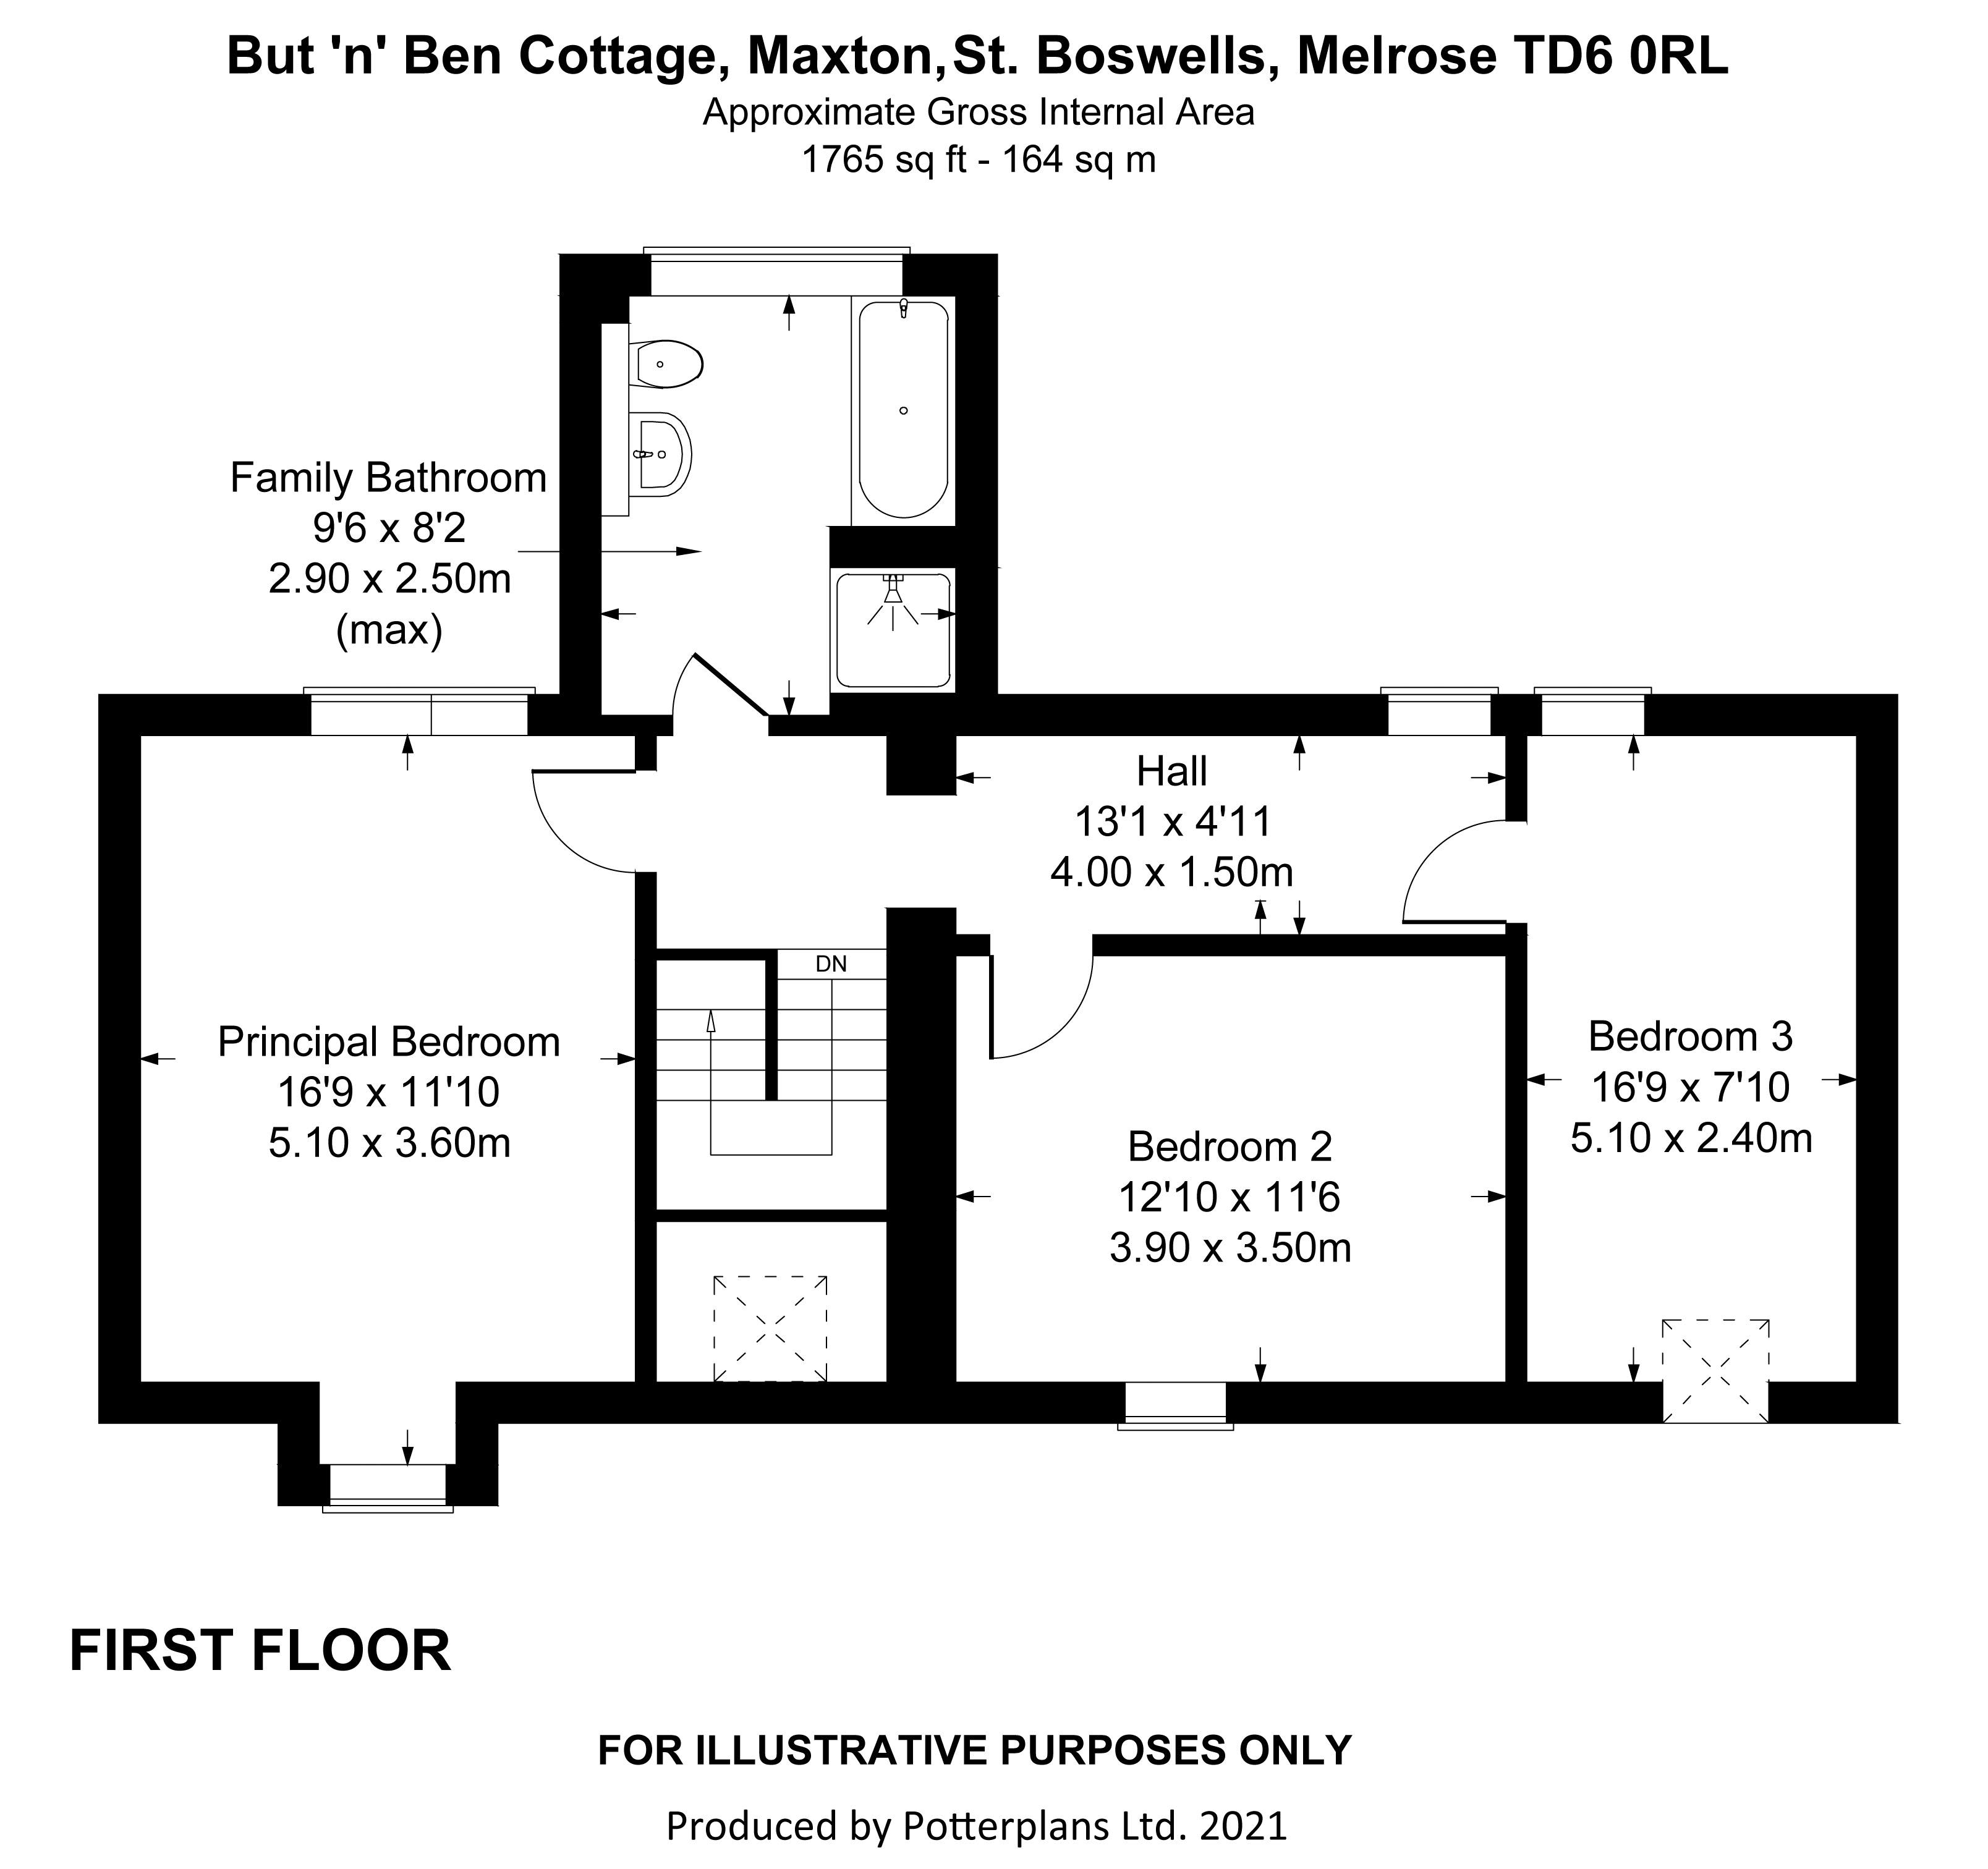 But 'n' Ben Cottage First Floor